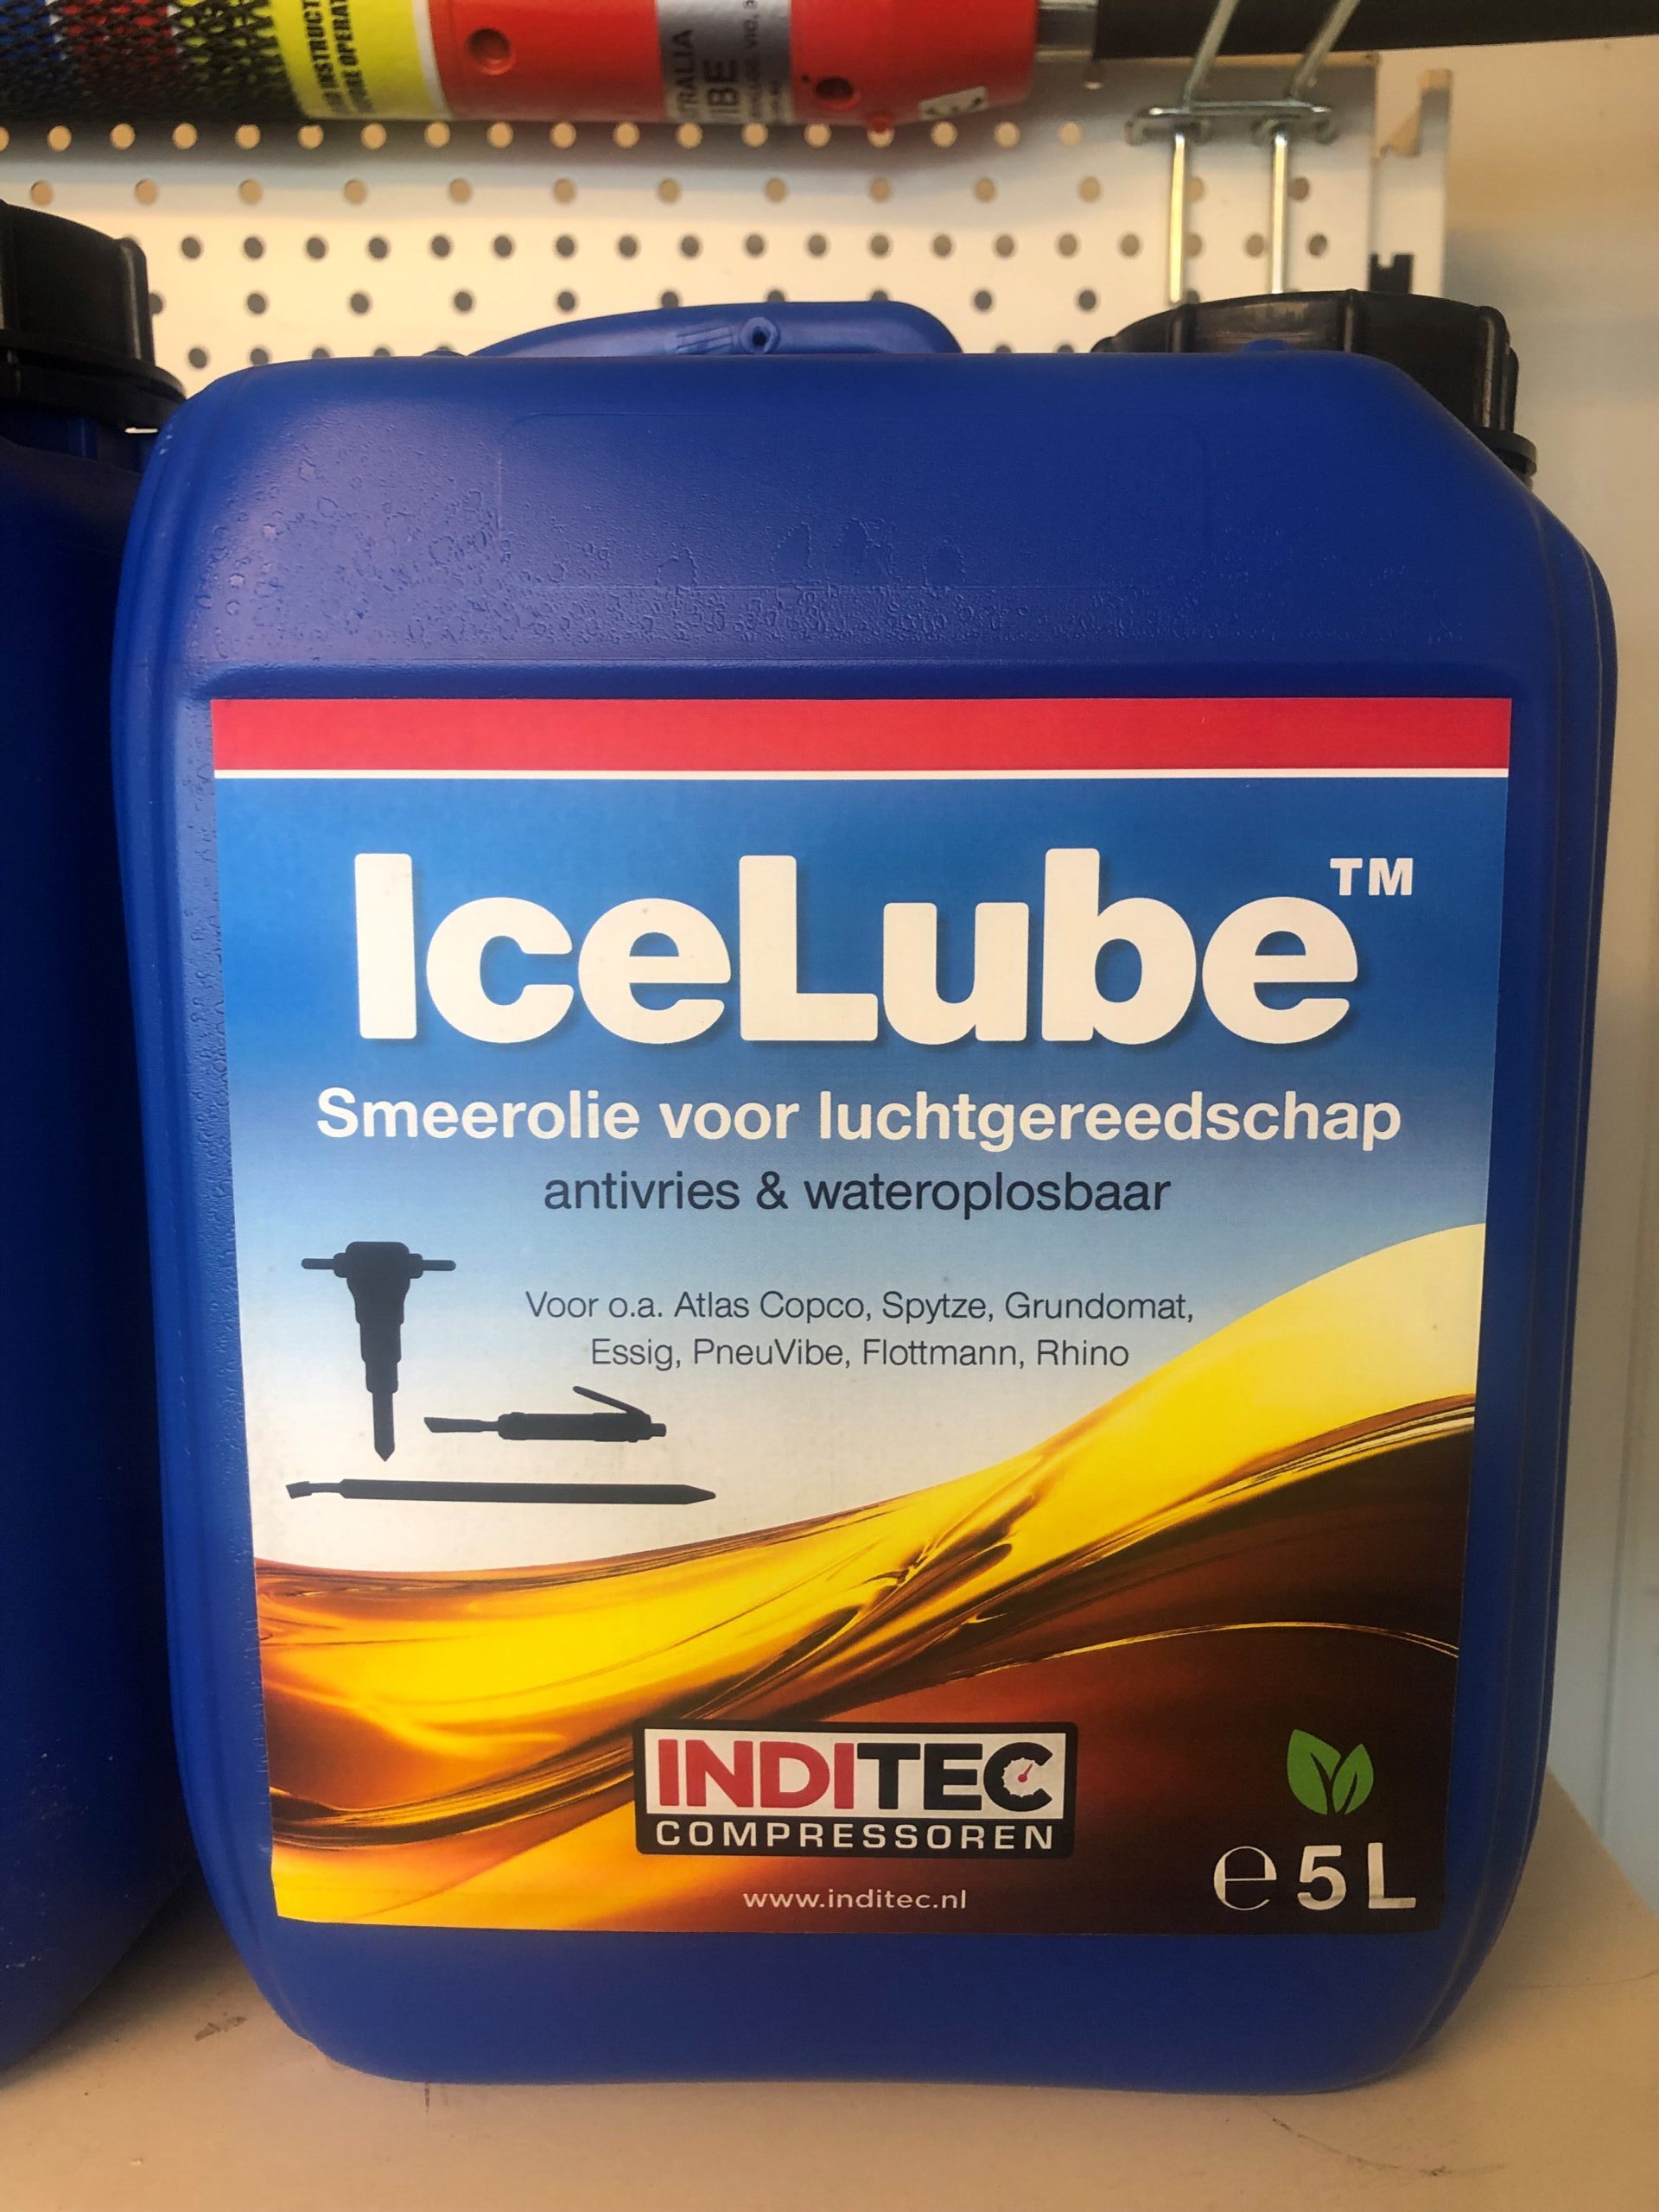 icelube